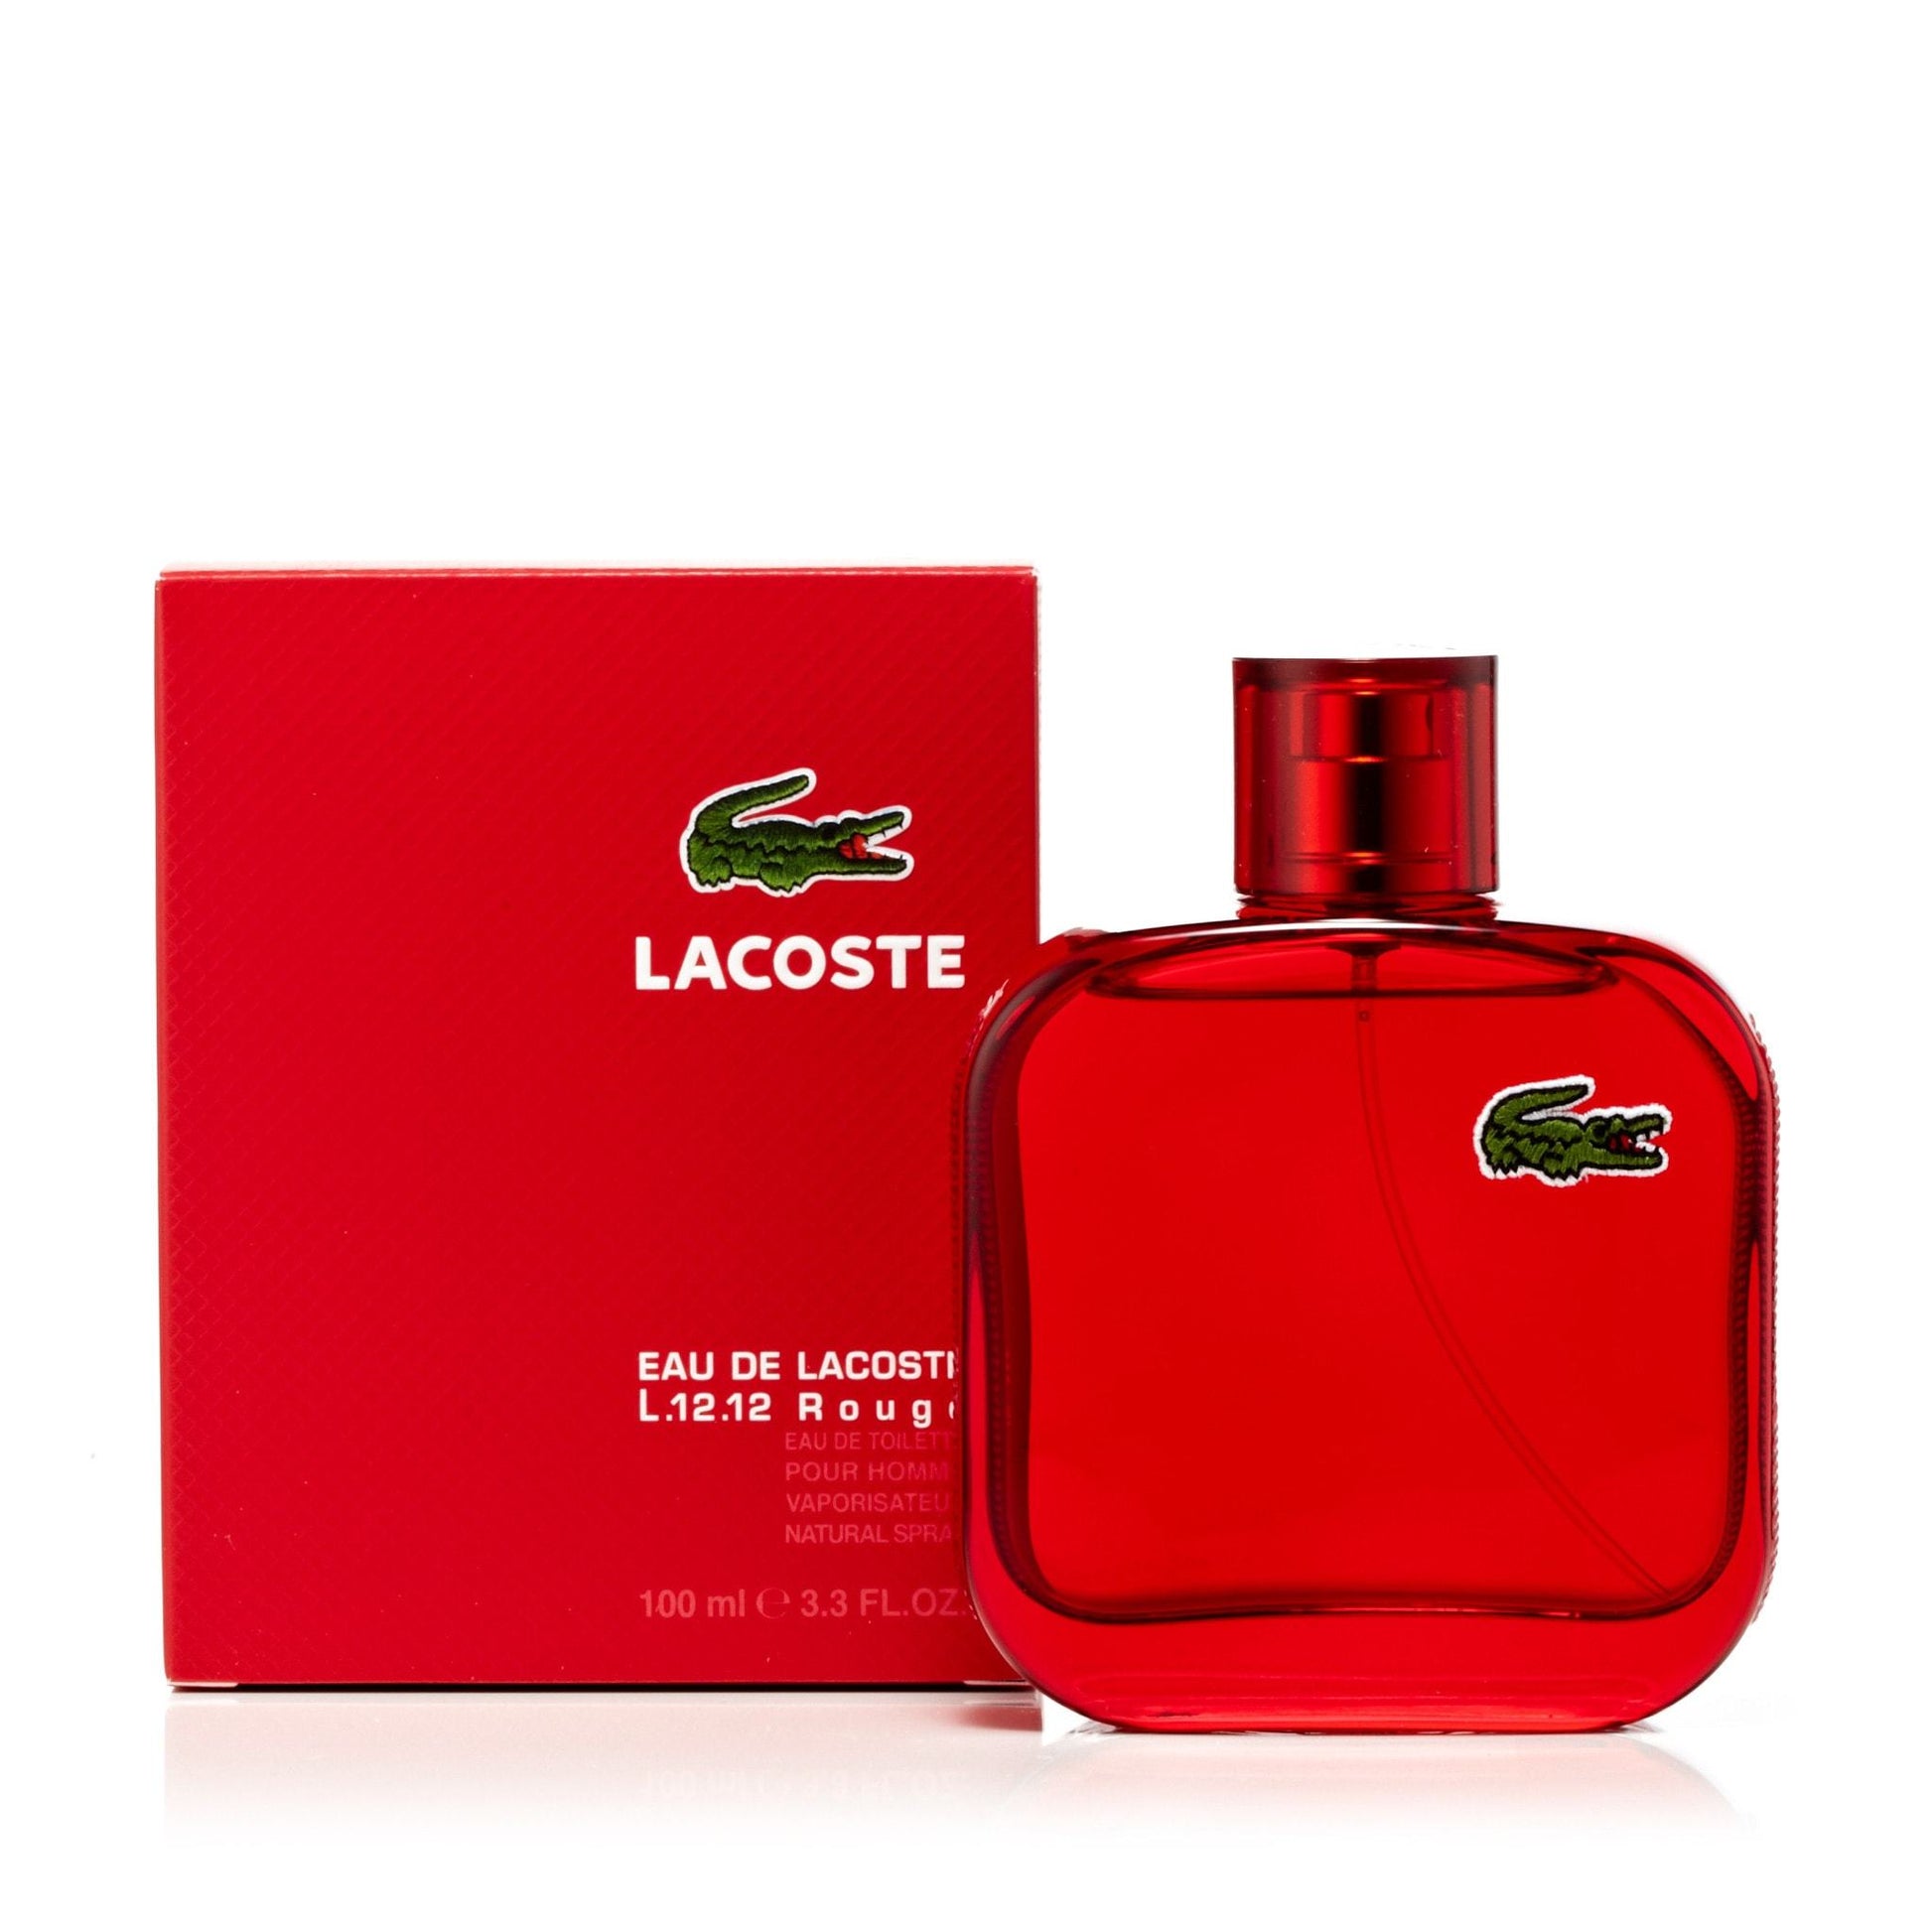 L.12.12 Rouge Eau de Toilette Spray for Men by Lacoste, Product image 5